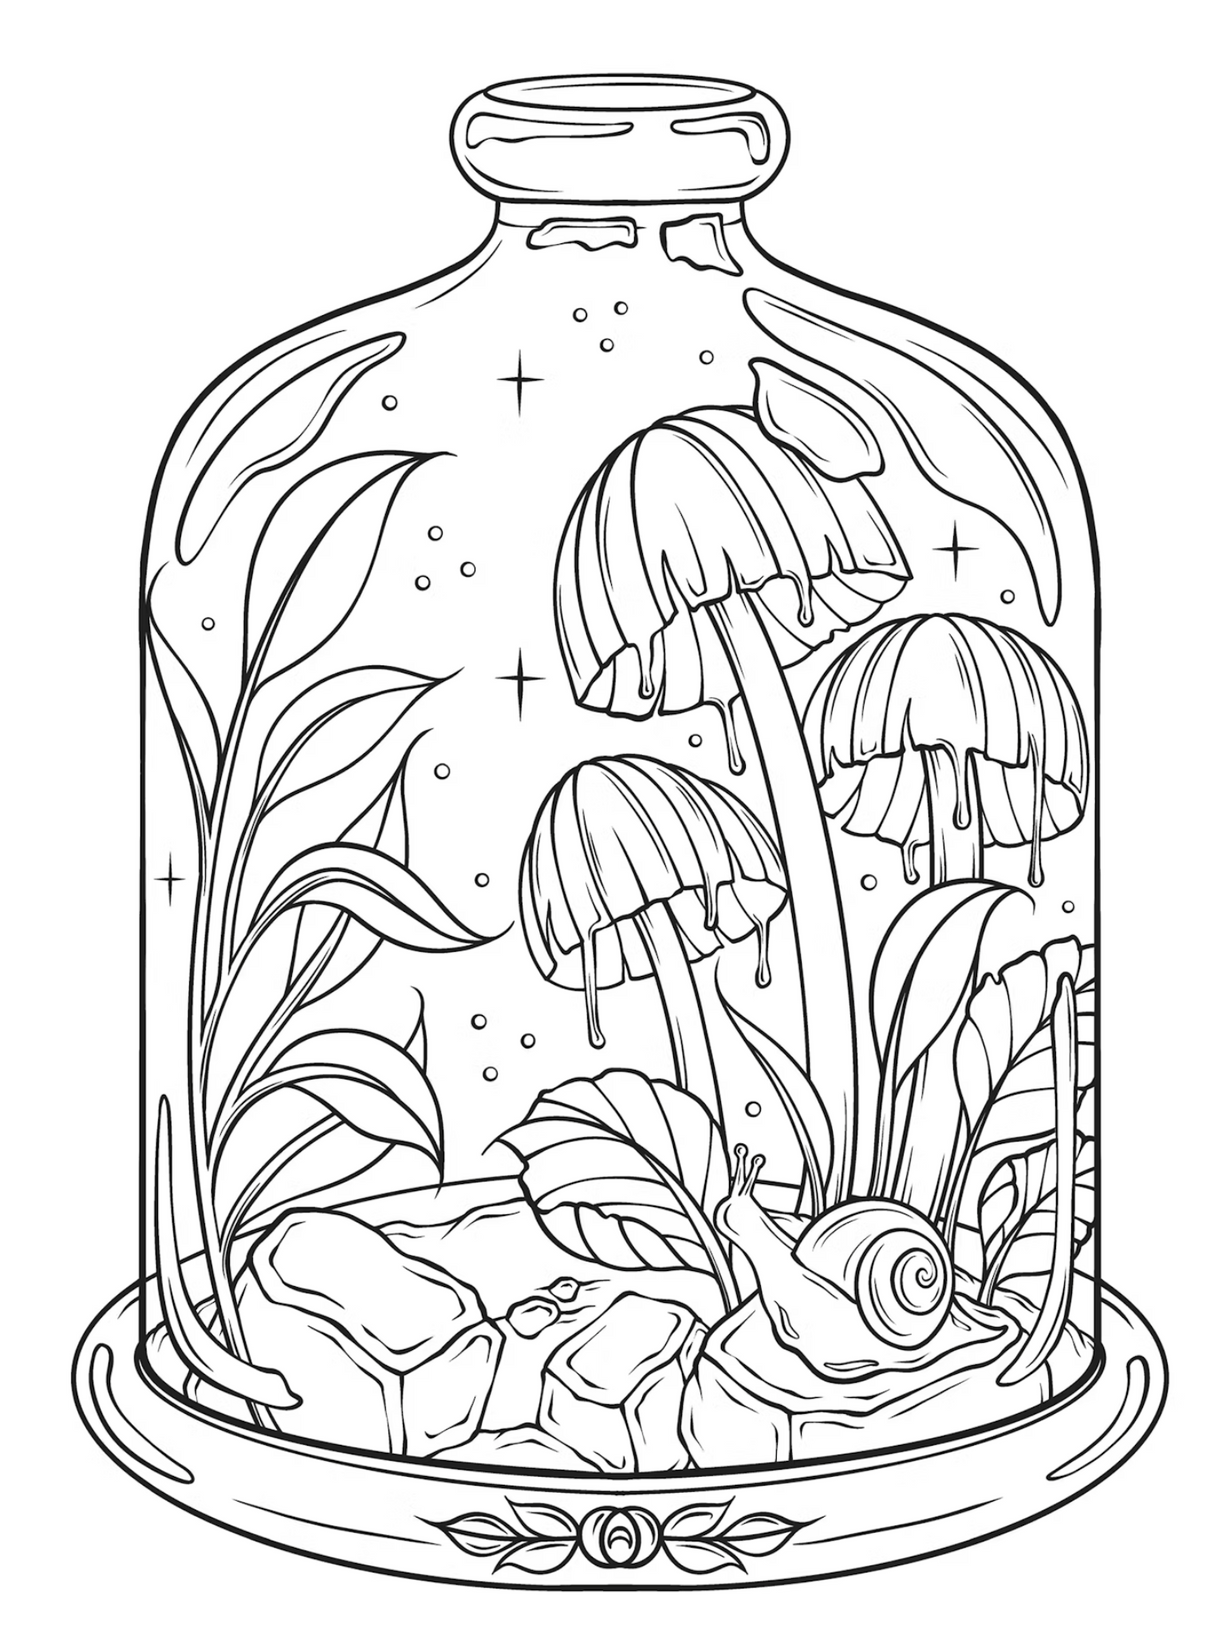 Art of Mushrooms Coloring Book